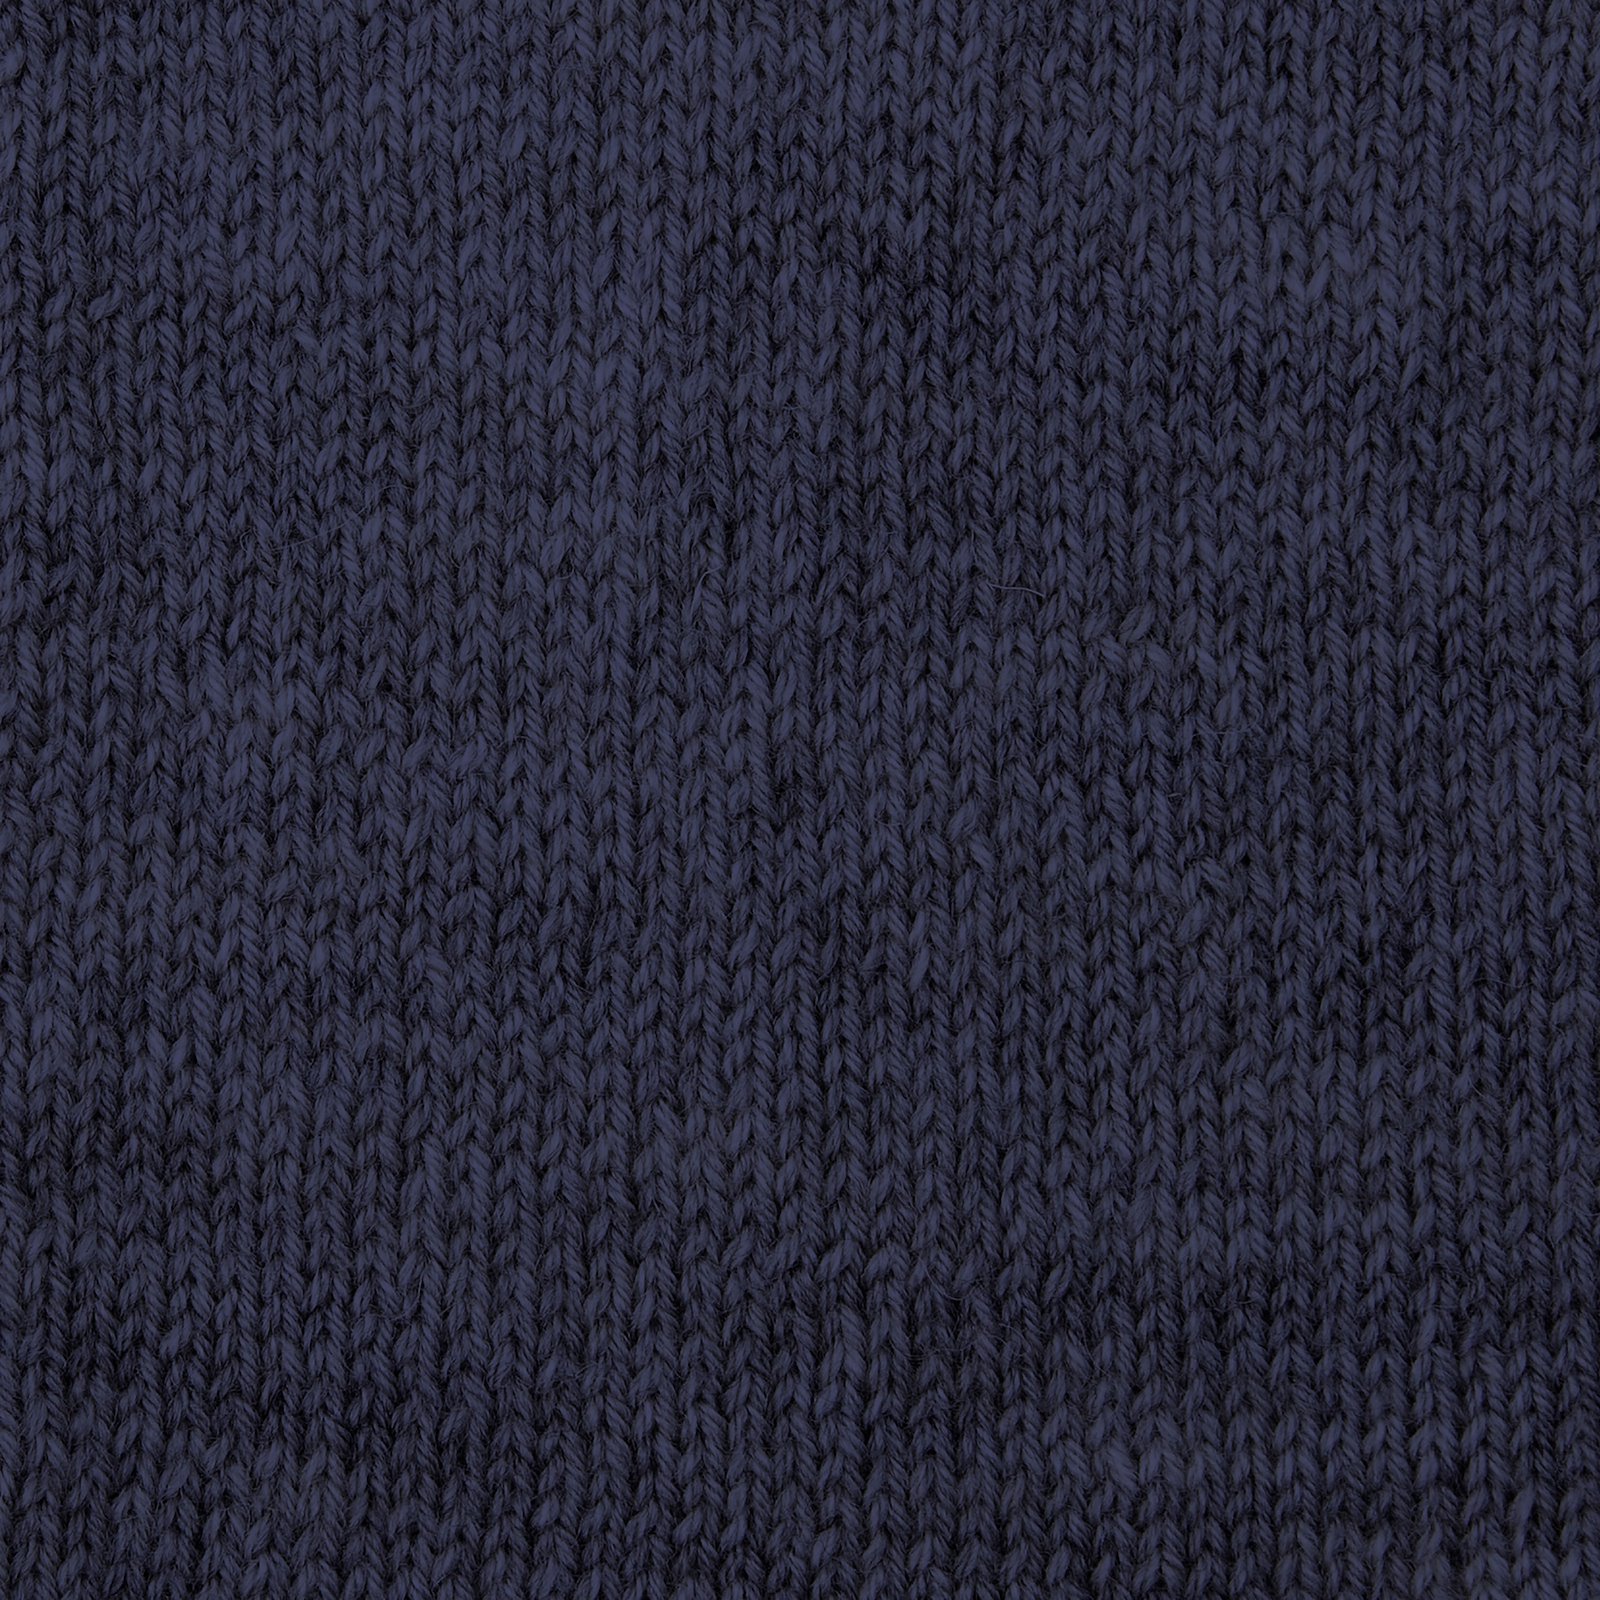 FRAYA,wool yarn "Steady", midnight blue 90000147_sskit